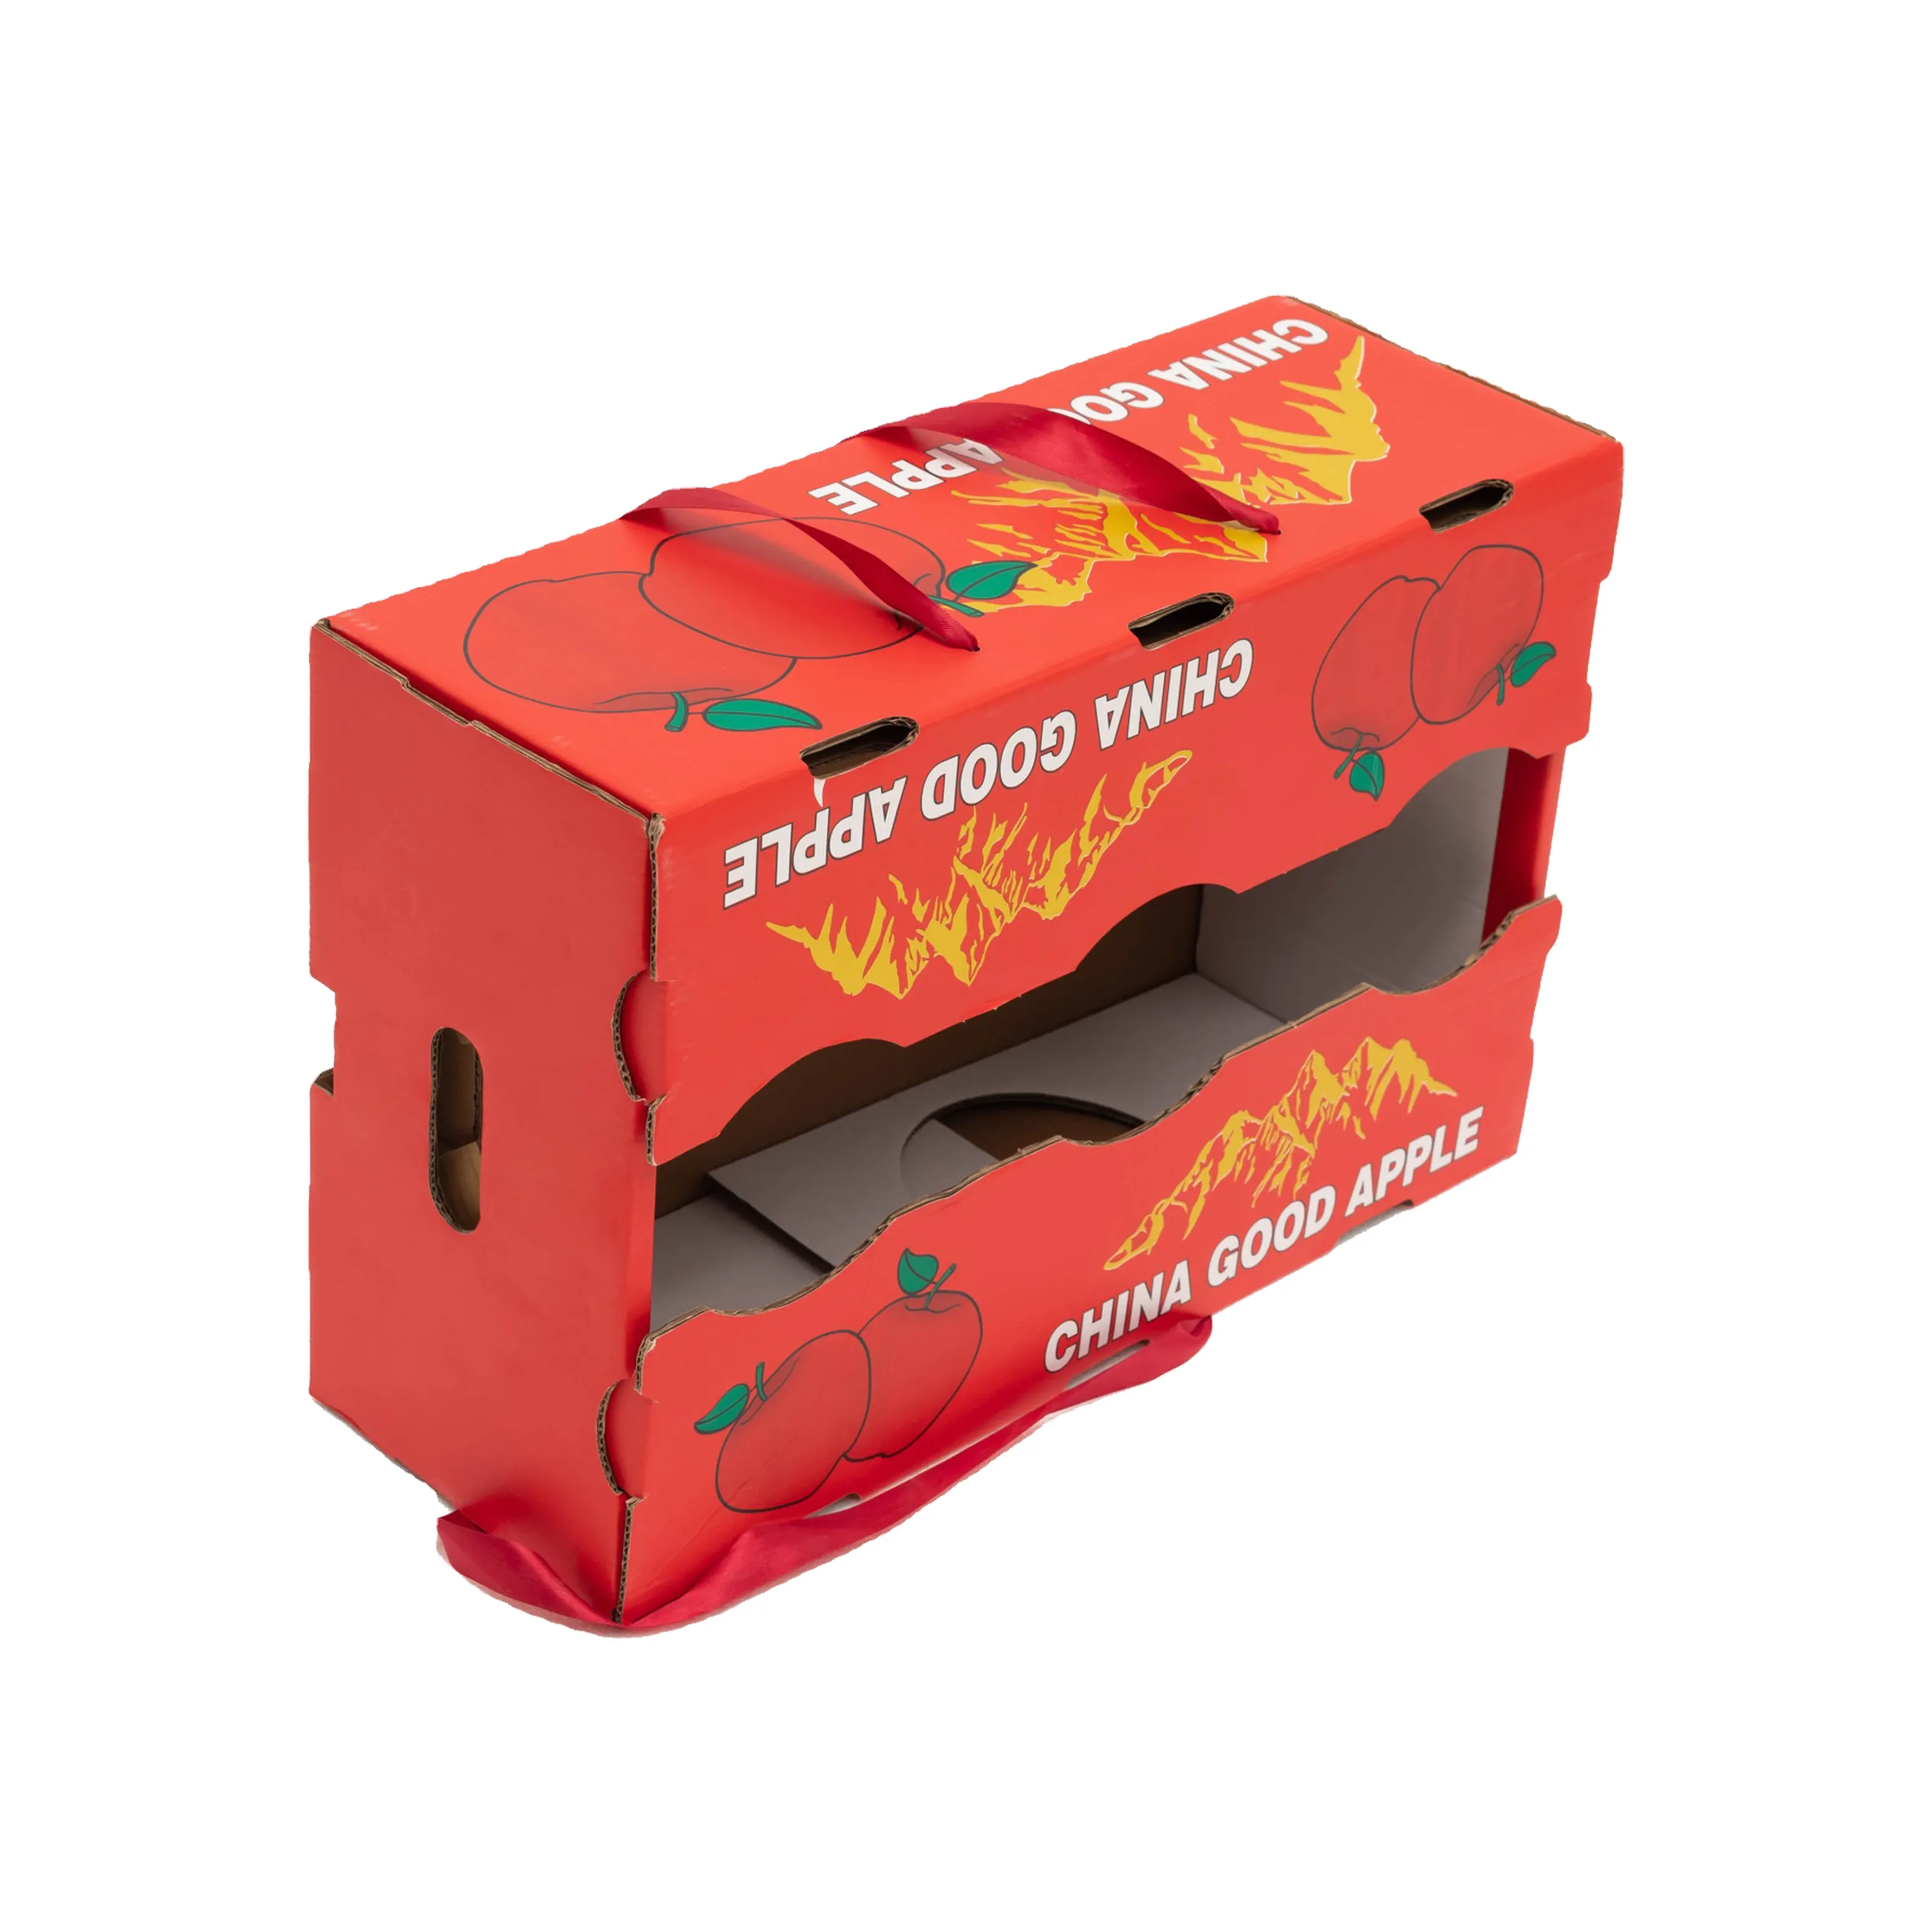 Impresión personalizada, embalaje de verduras grueso y duradero, cartón corrugado, papel, caja plegable para frutas